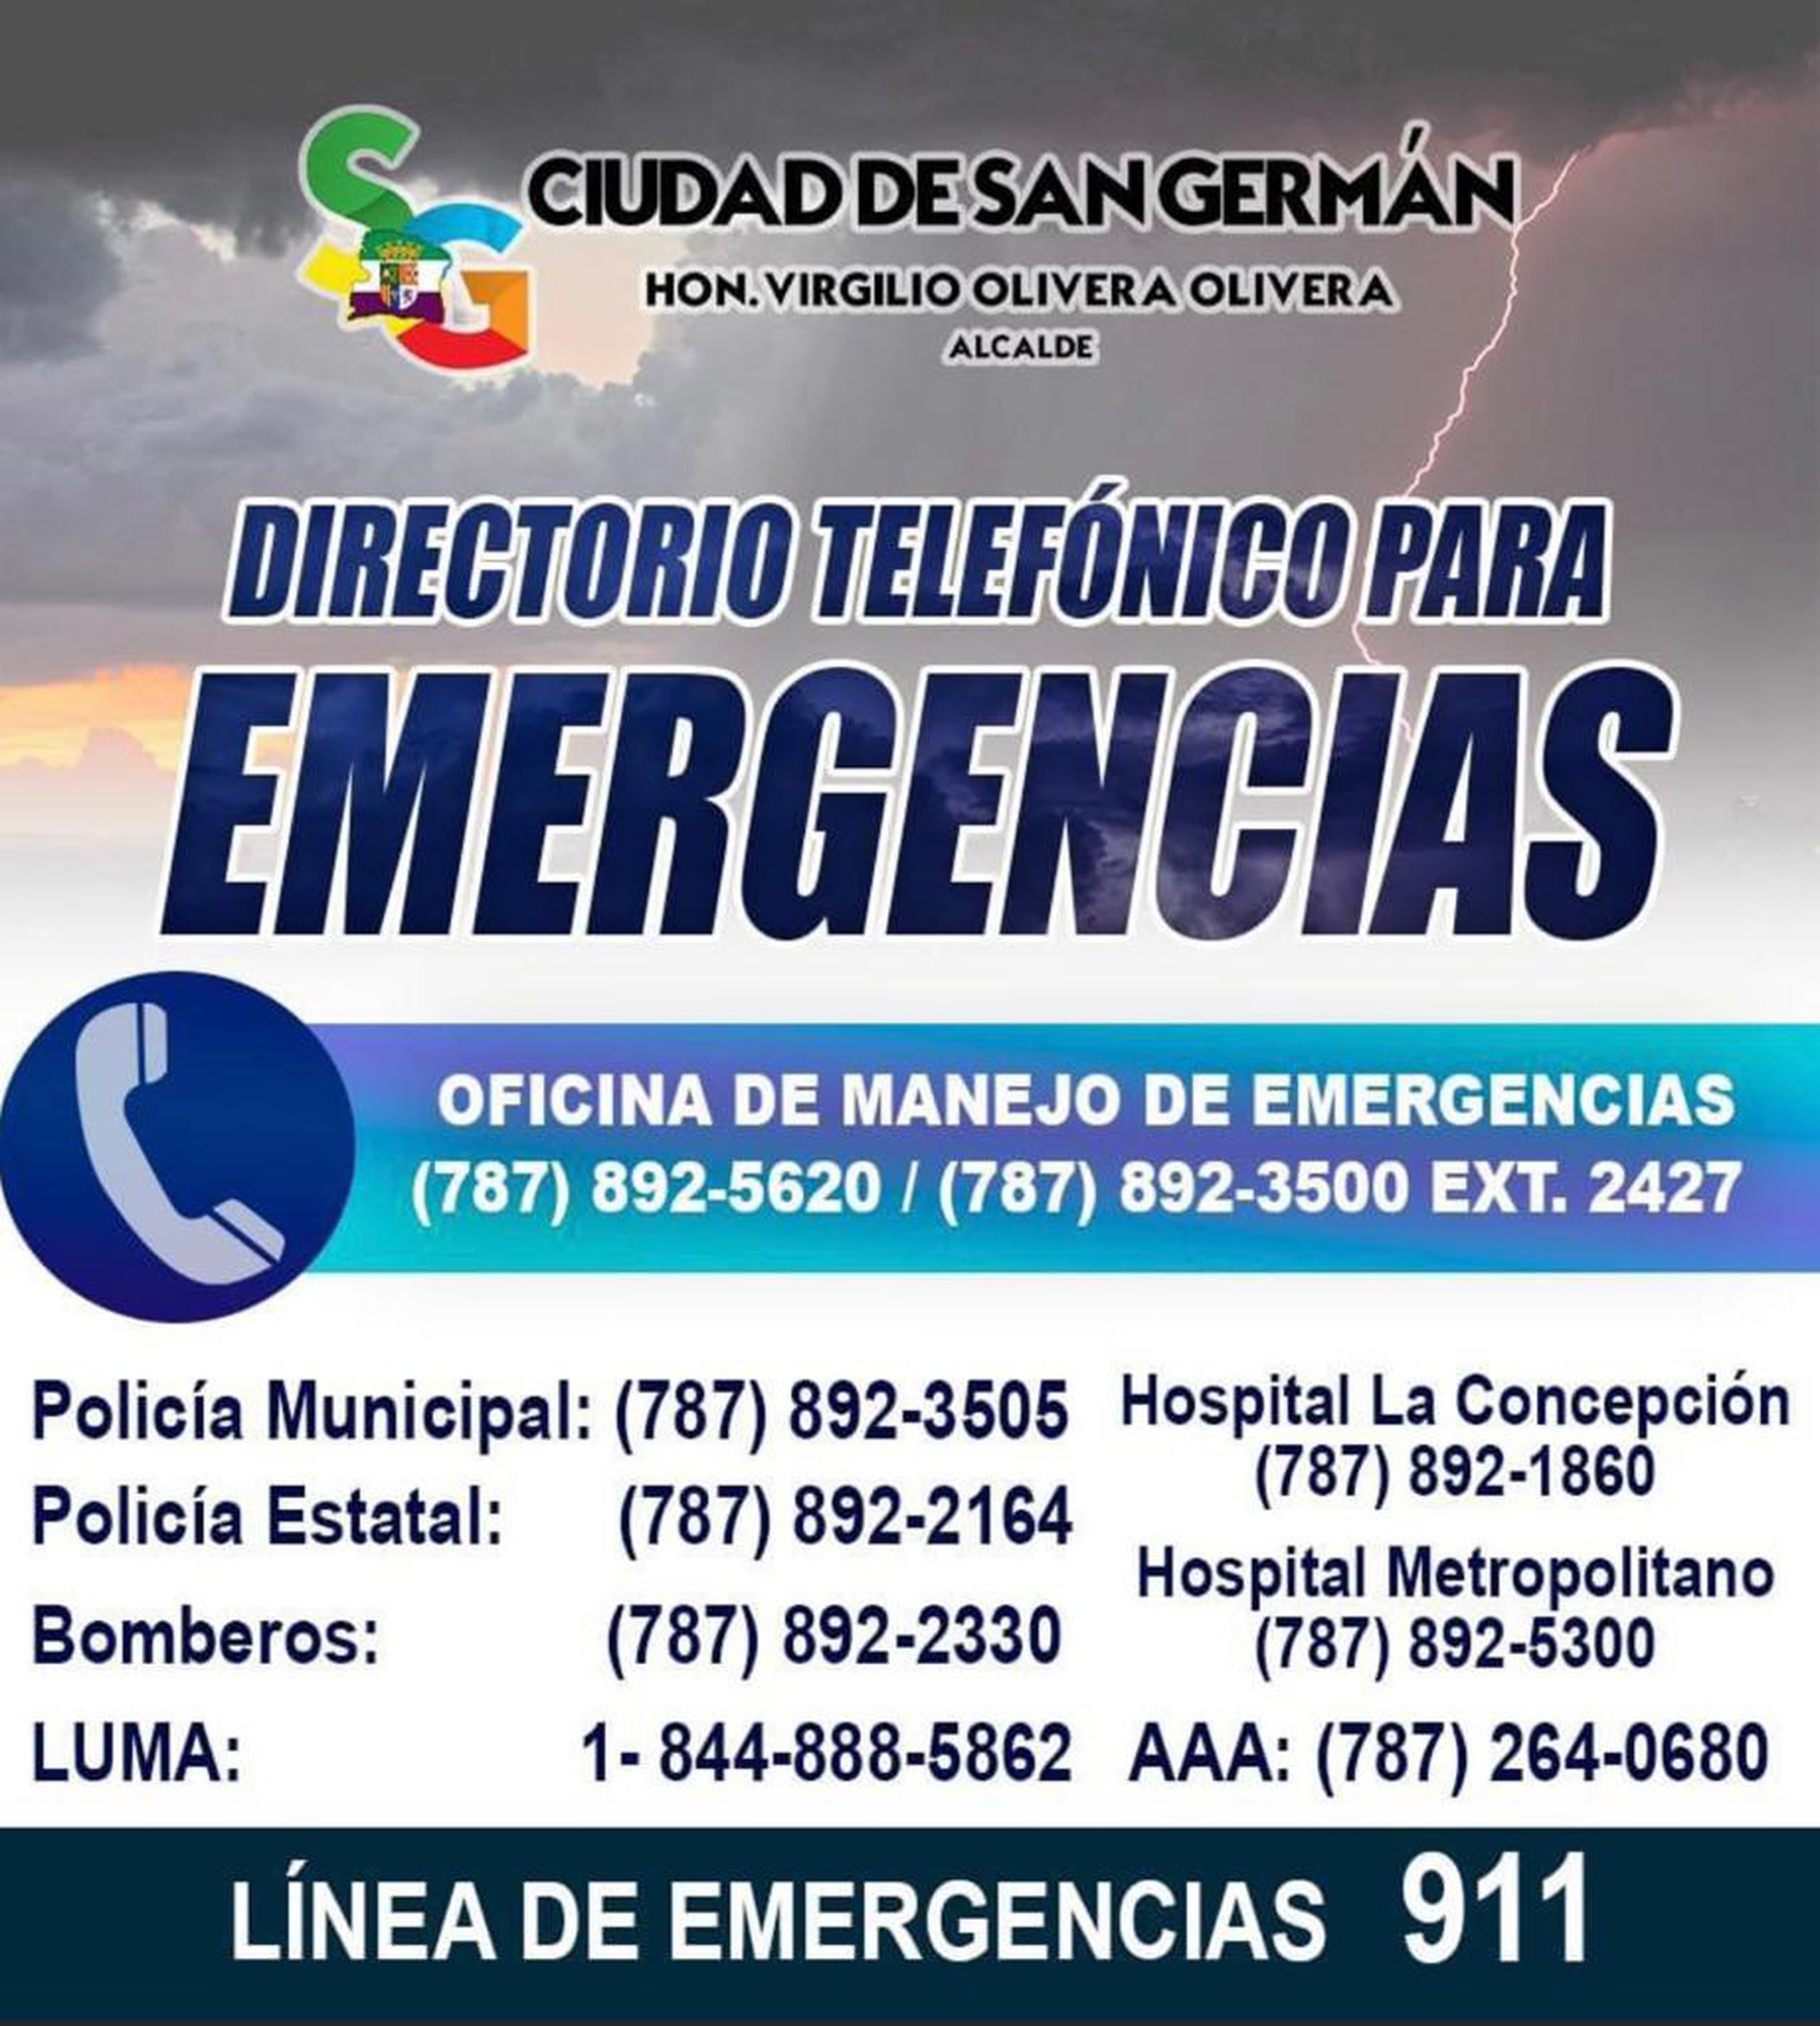 Directorio telefónico para emergencias en San Germán.